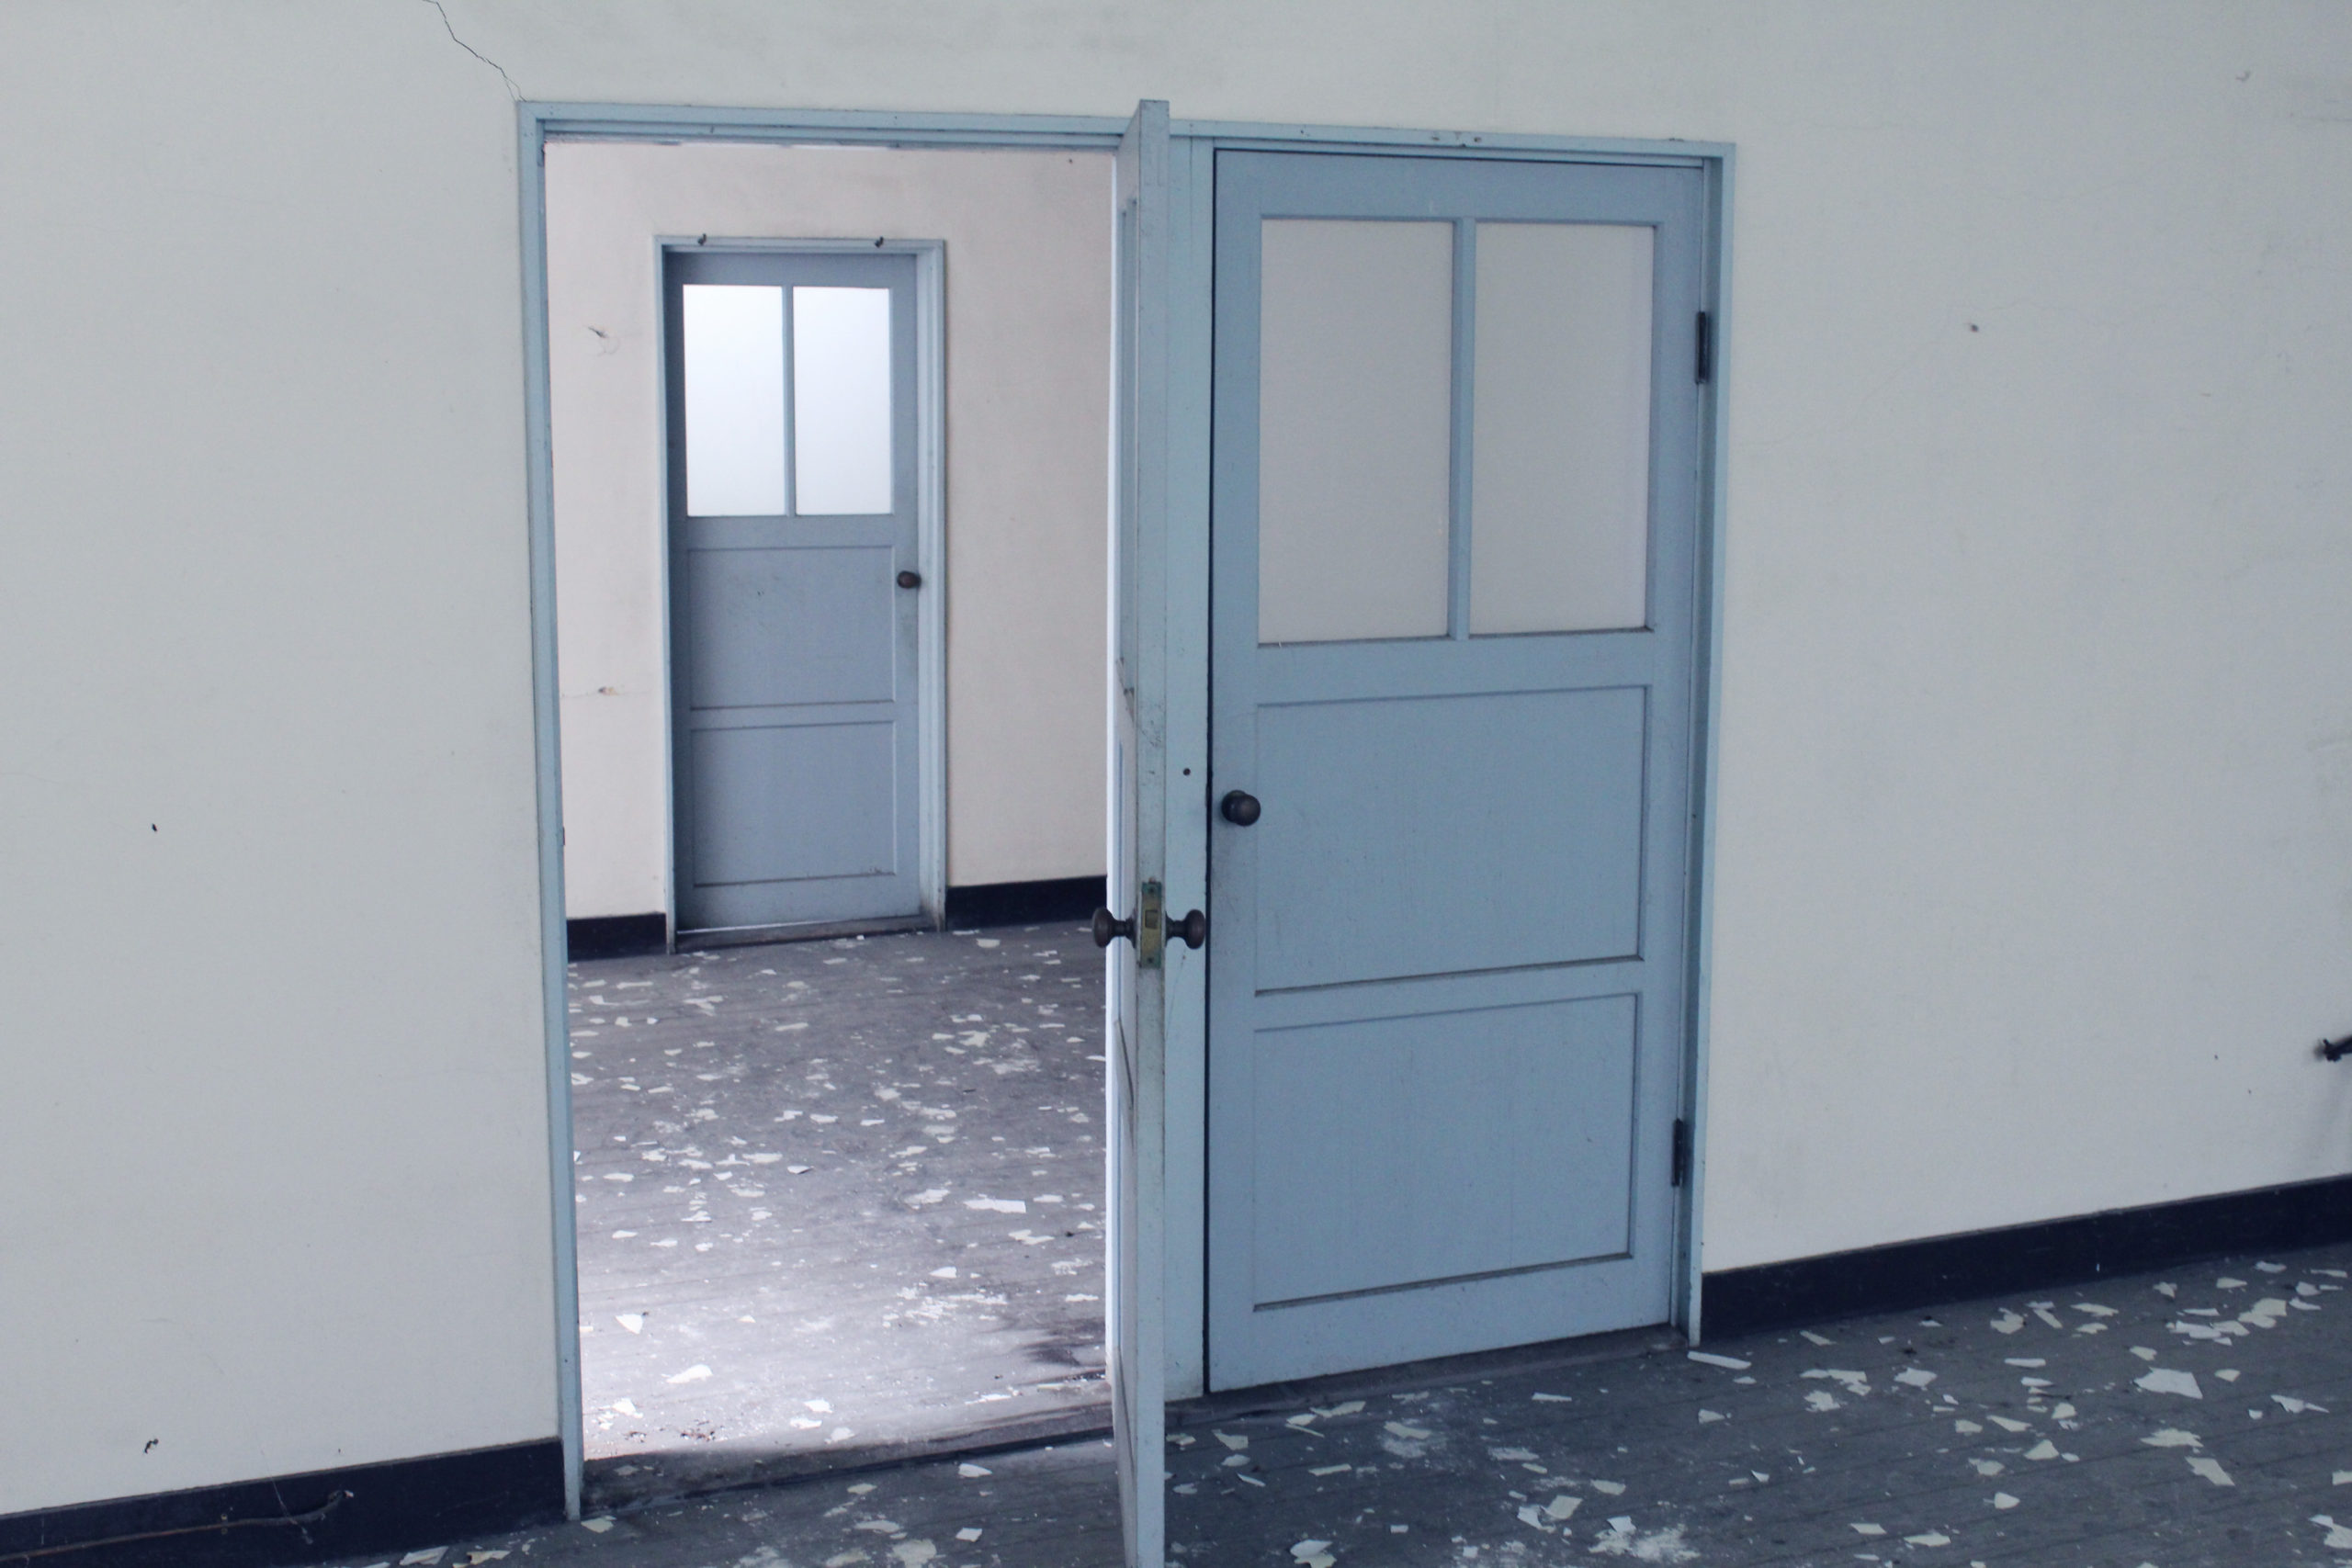 A classroom door with lock. The door is blue and wide open.